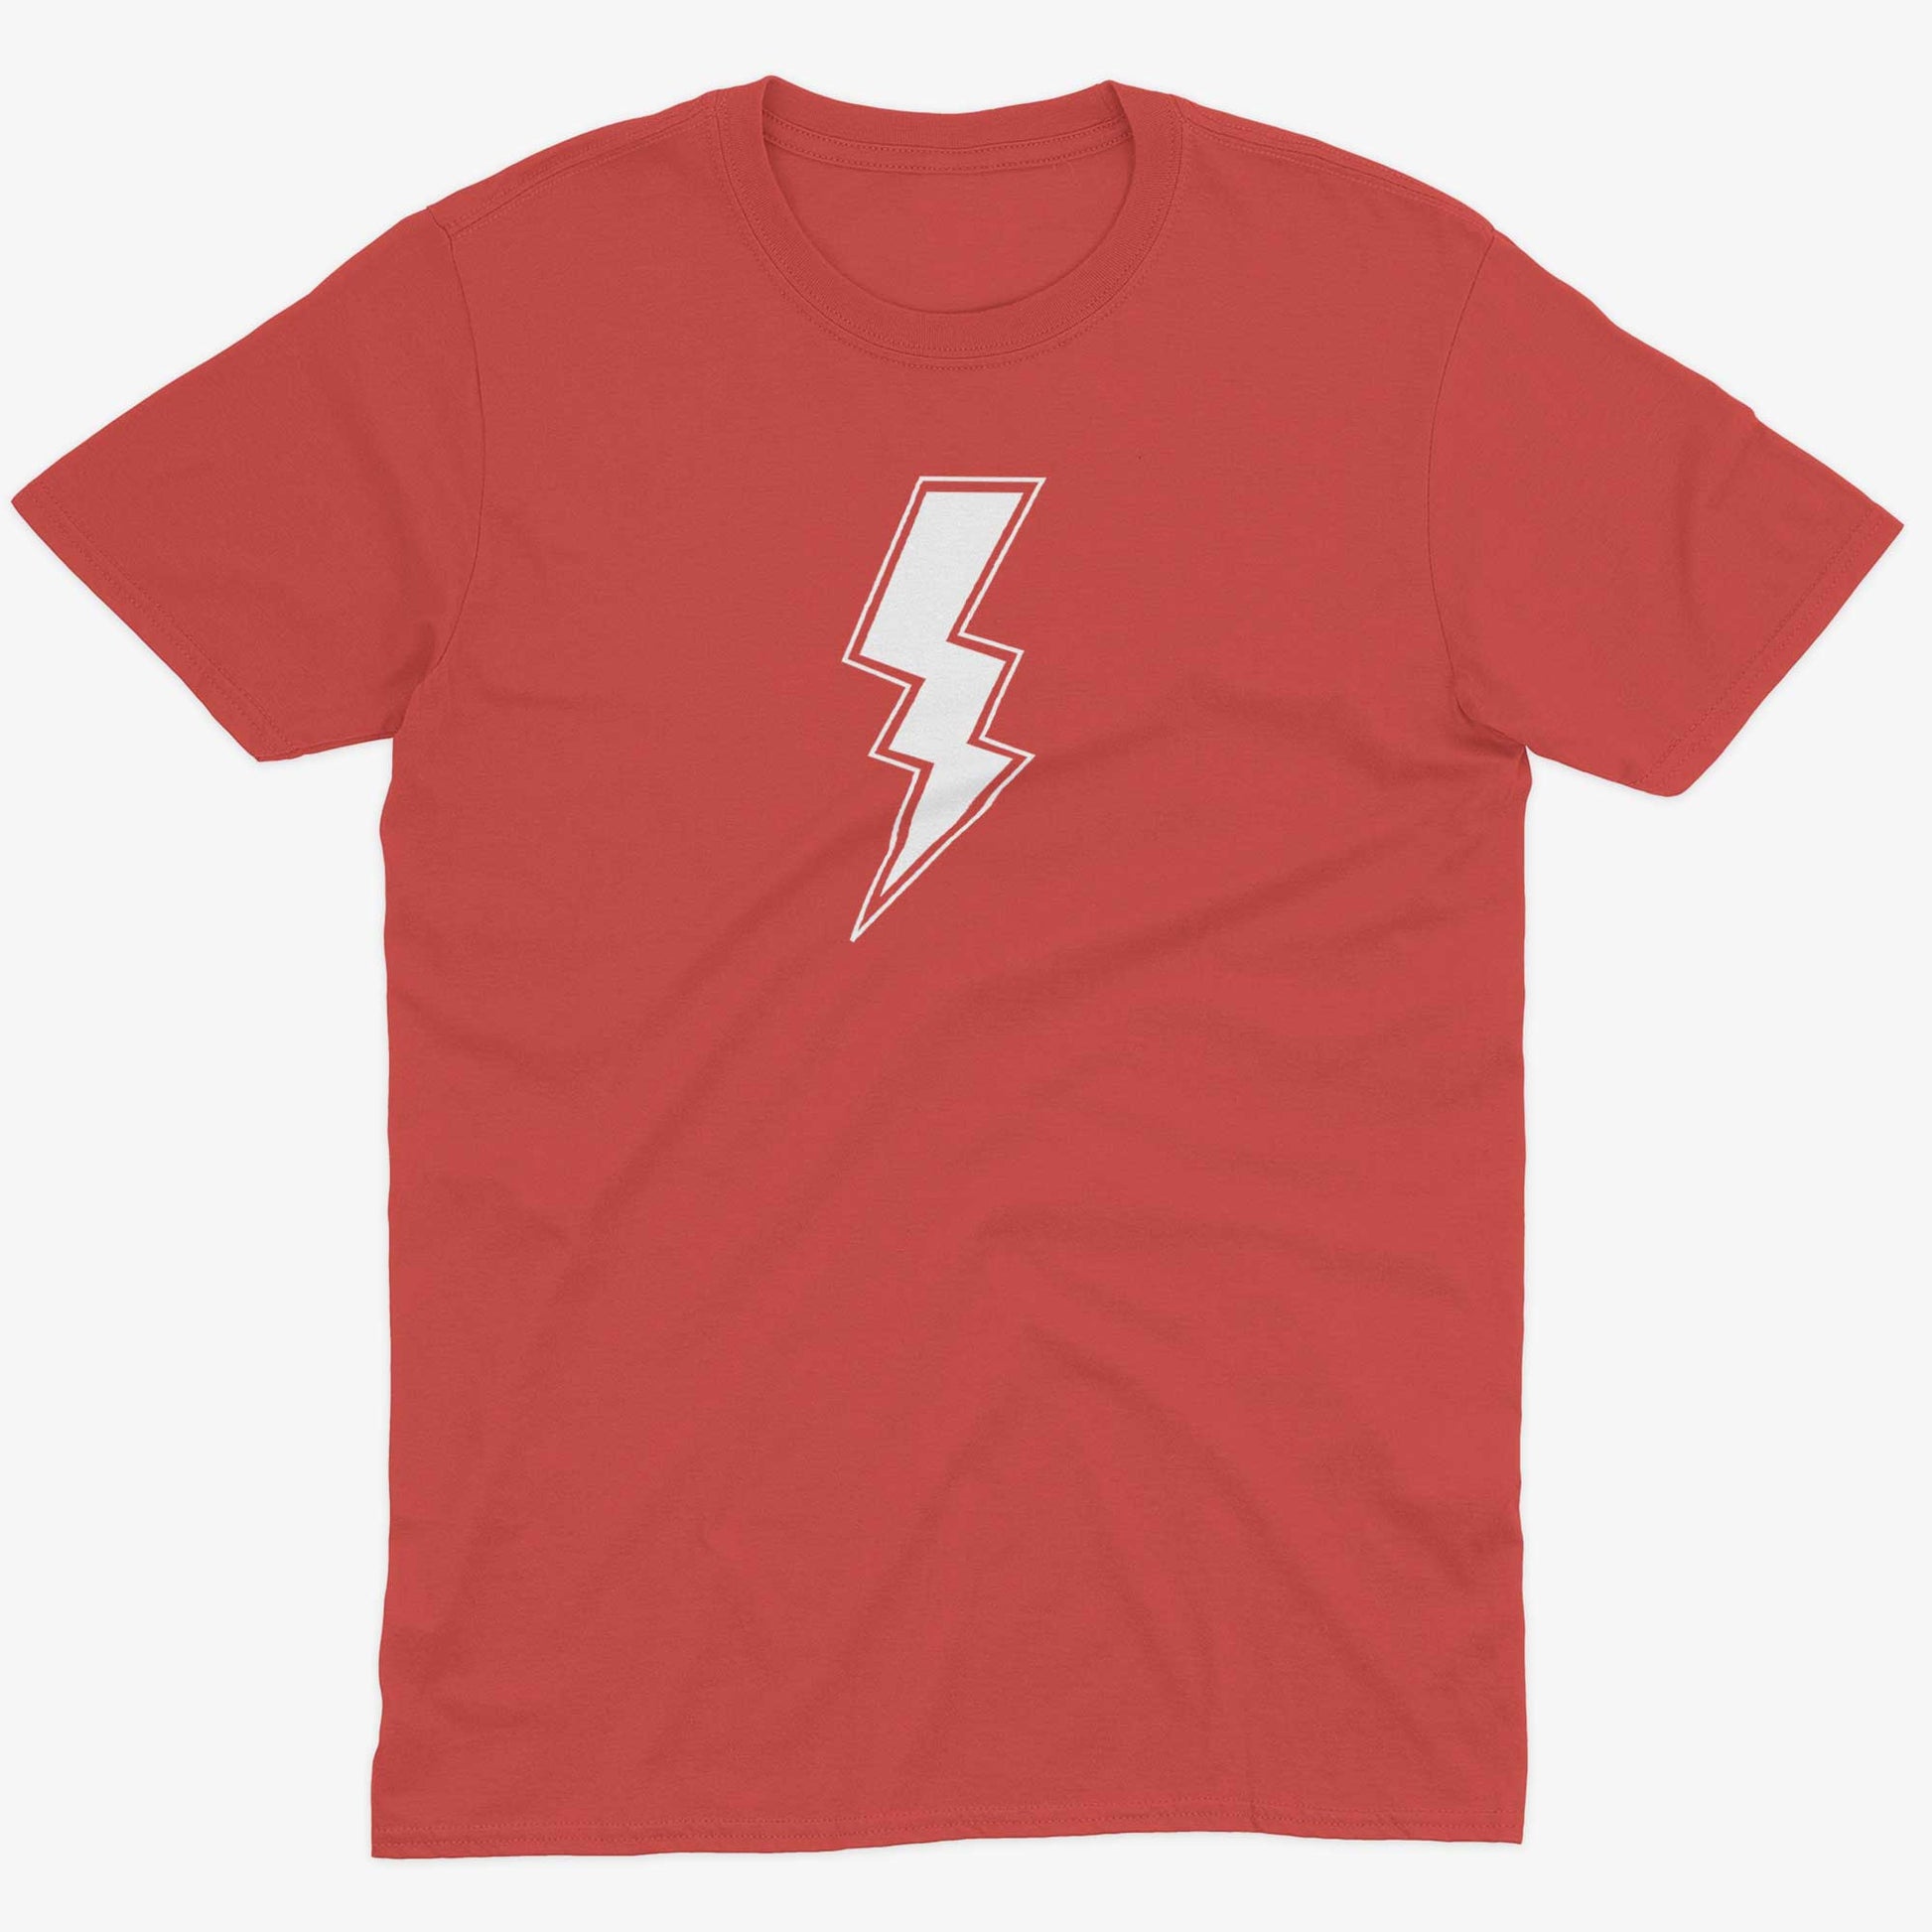 Giant Lightning Bolt Unisex Or Women's Cotton T-shirt-Red-Unisex